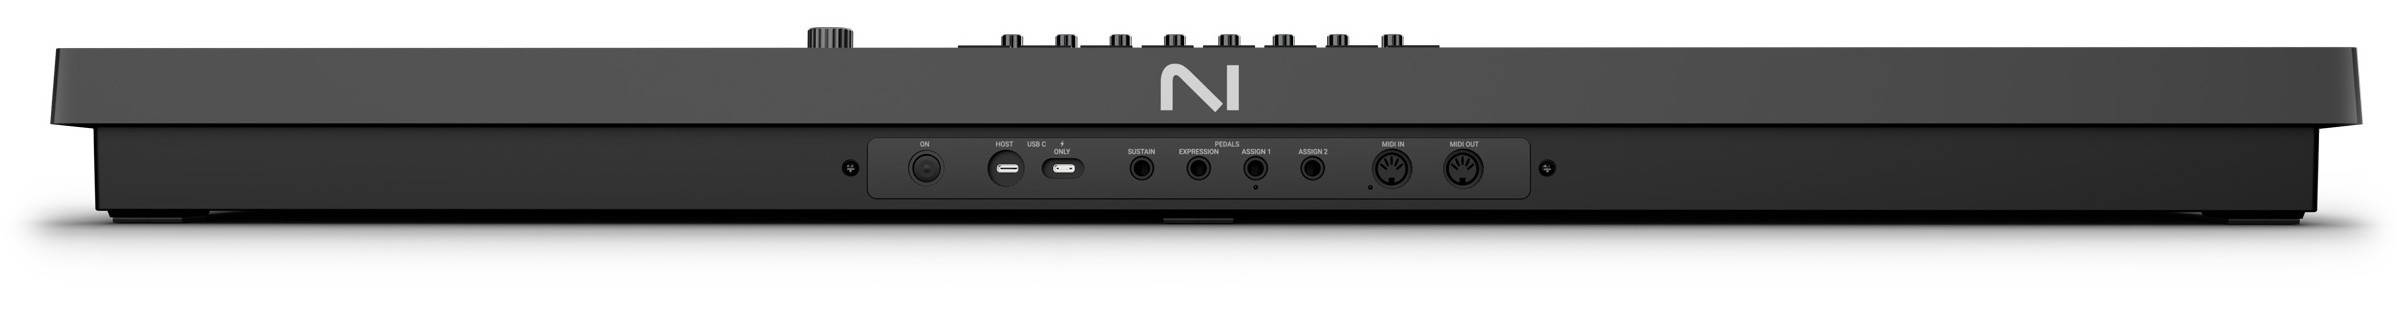 Komplete Kontrol S88 MK3 ofrece una variedad de opciones de conectividad, incluyendo USB, MIDI, alimentación por bus USB-C y entradas para pedal de sustain, expresión y dos asignables